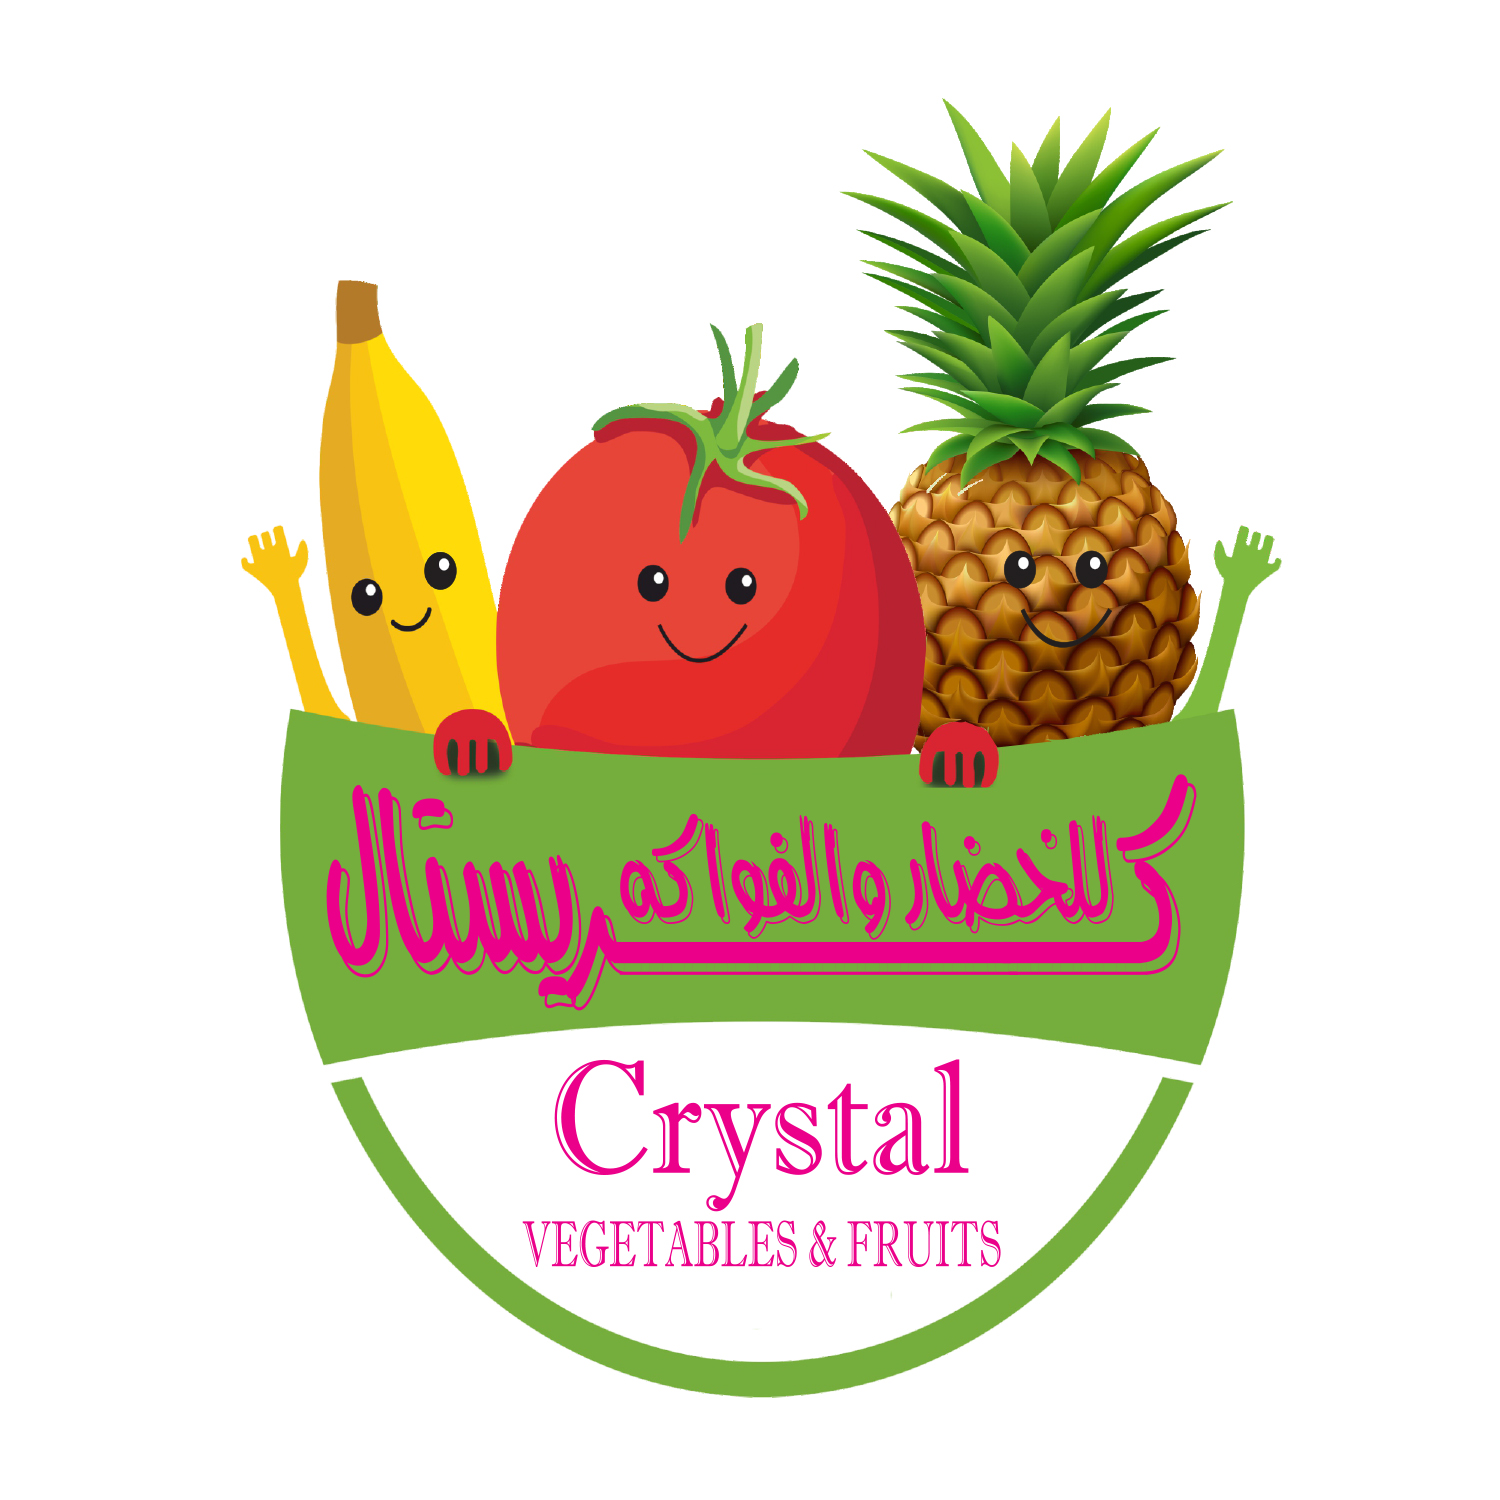 Crystal Vegetables & Fruits